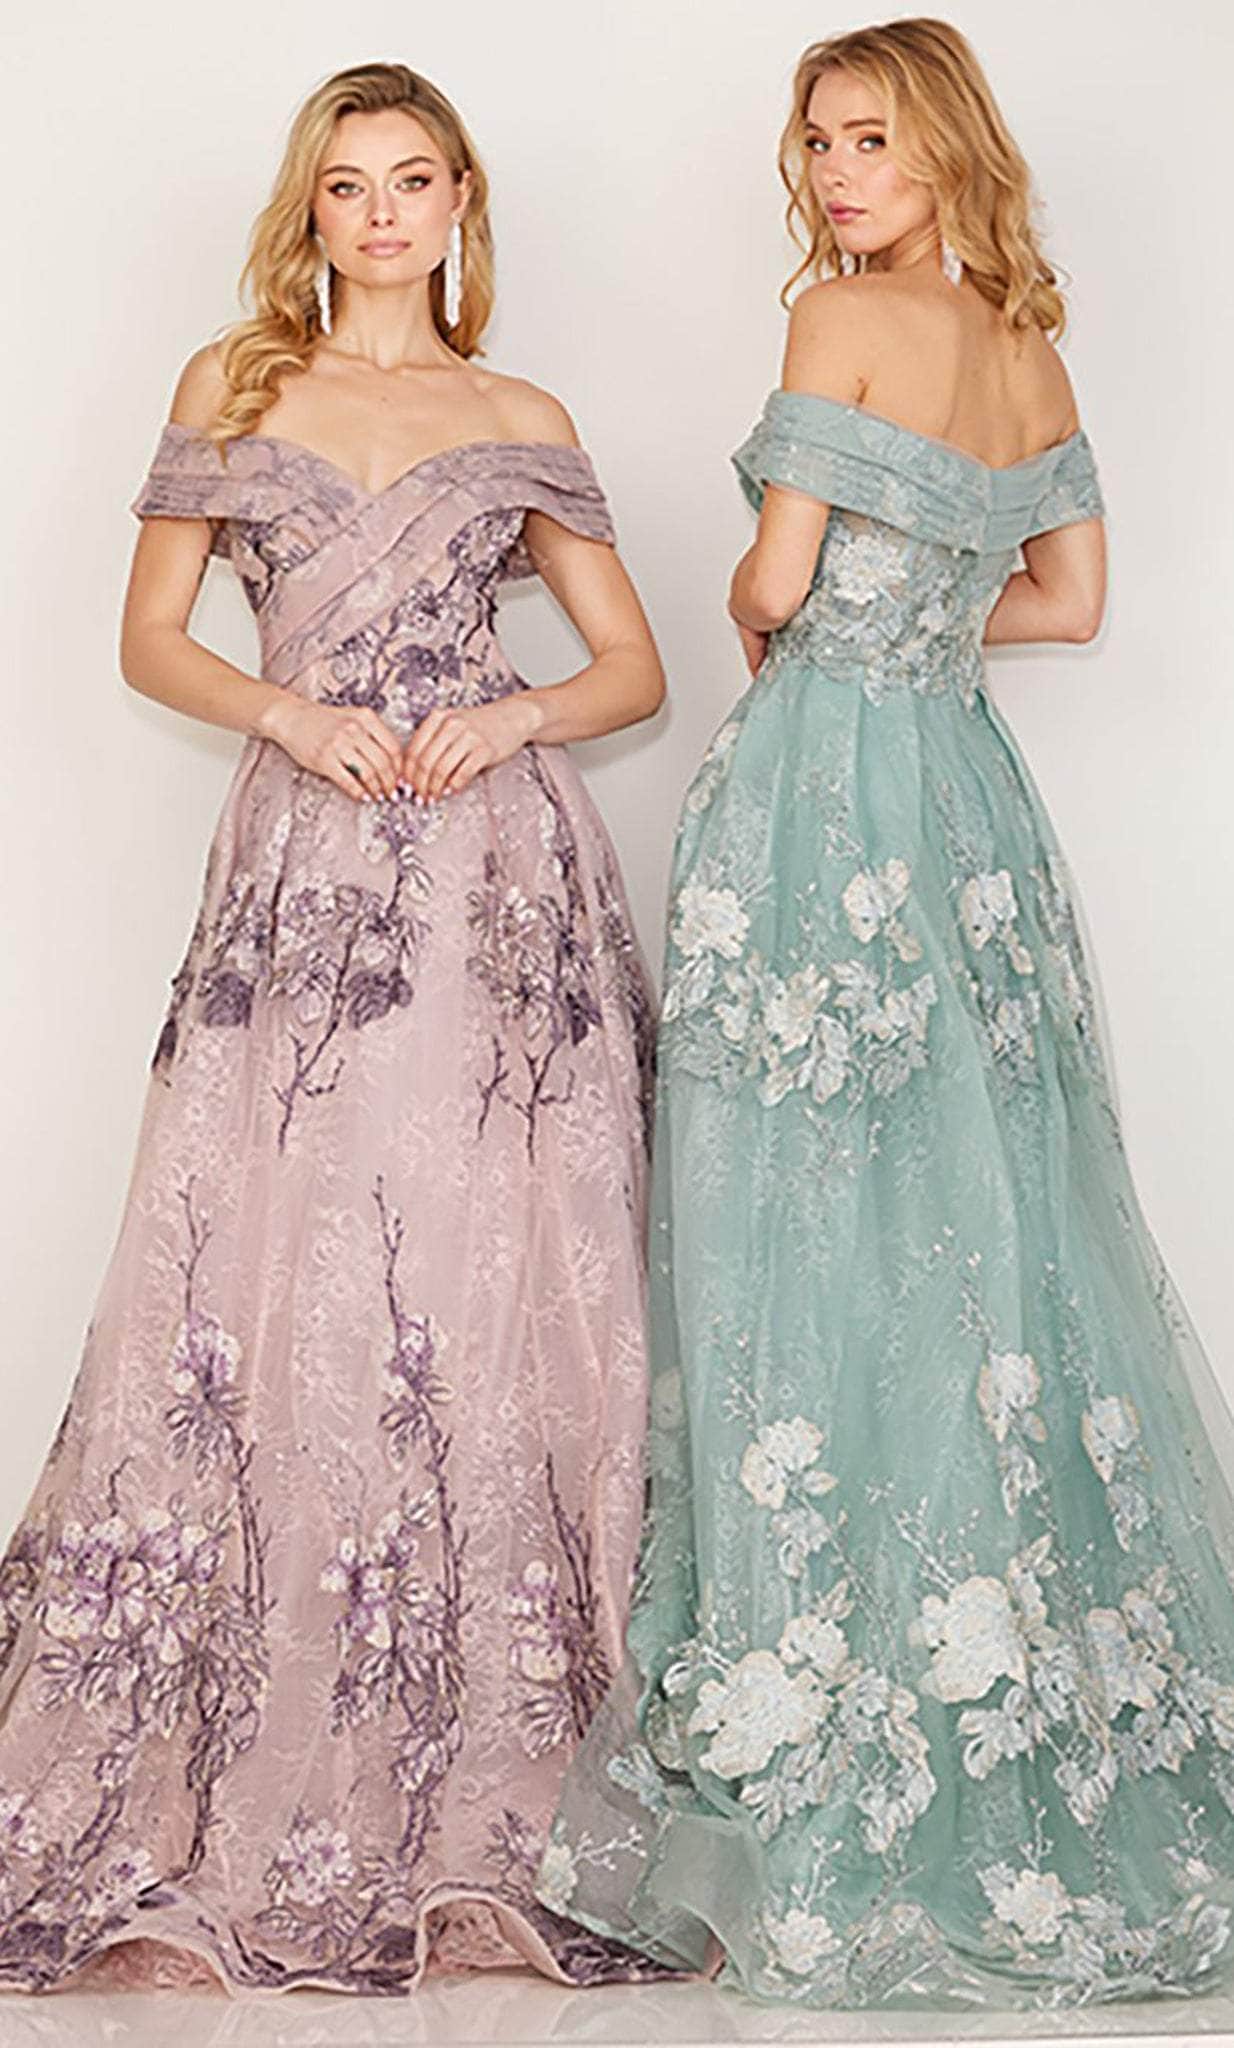 Cecilia Couture 193 - Off Shoulder Floral Lace Dress
